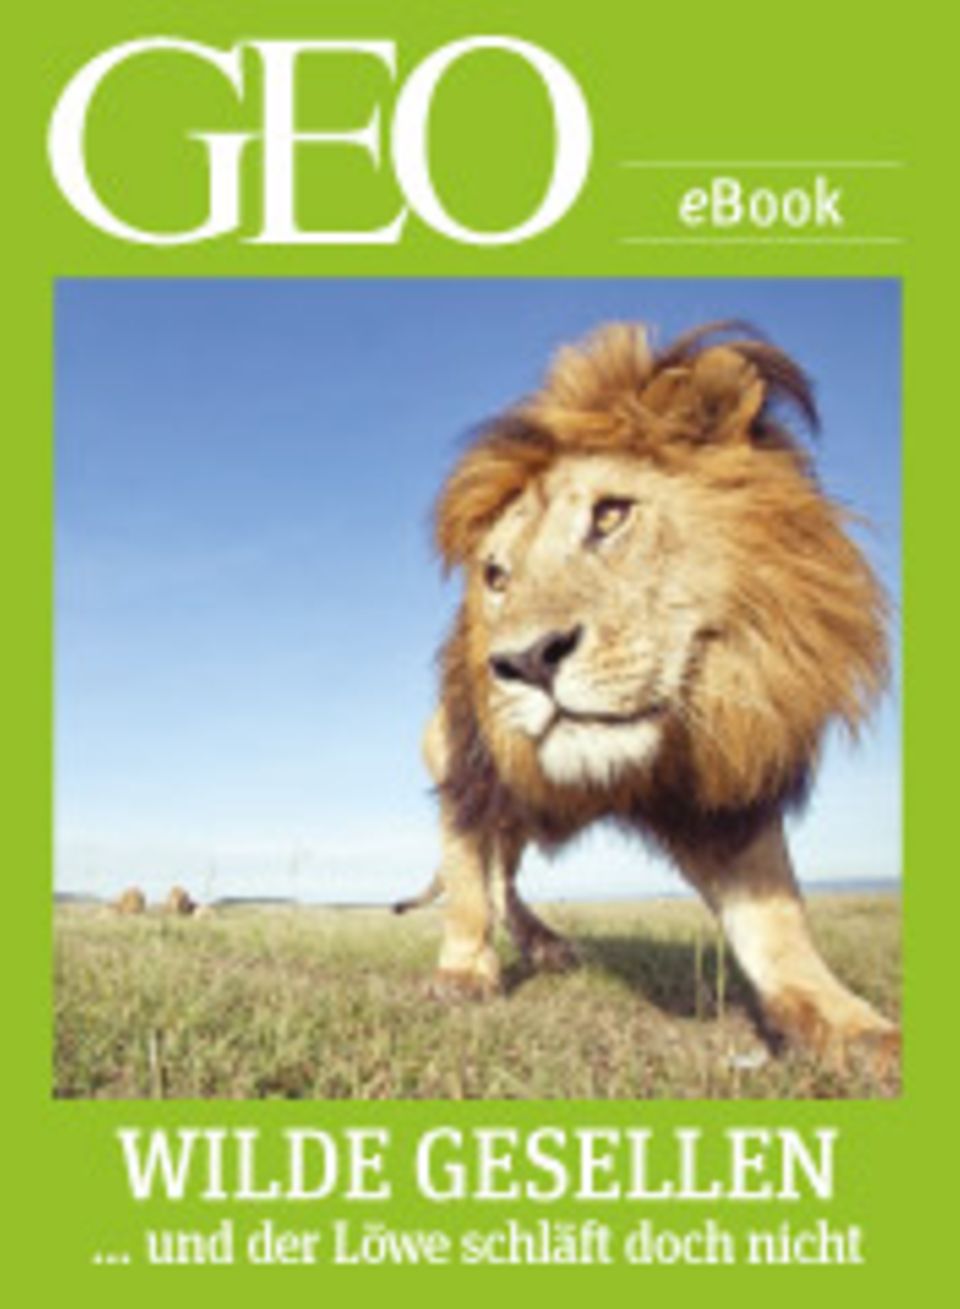 GEO-Expeditionen in die Welt der Tiere: GEO eBook "Wilde Gesellen"